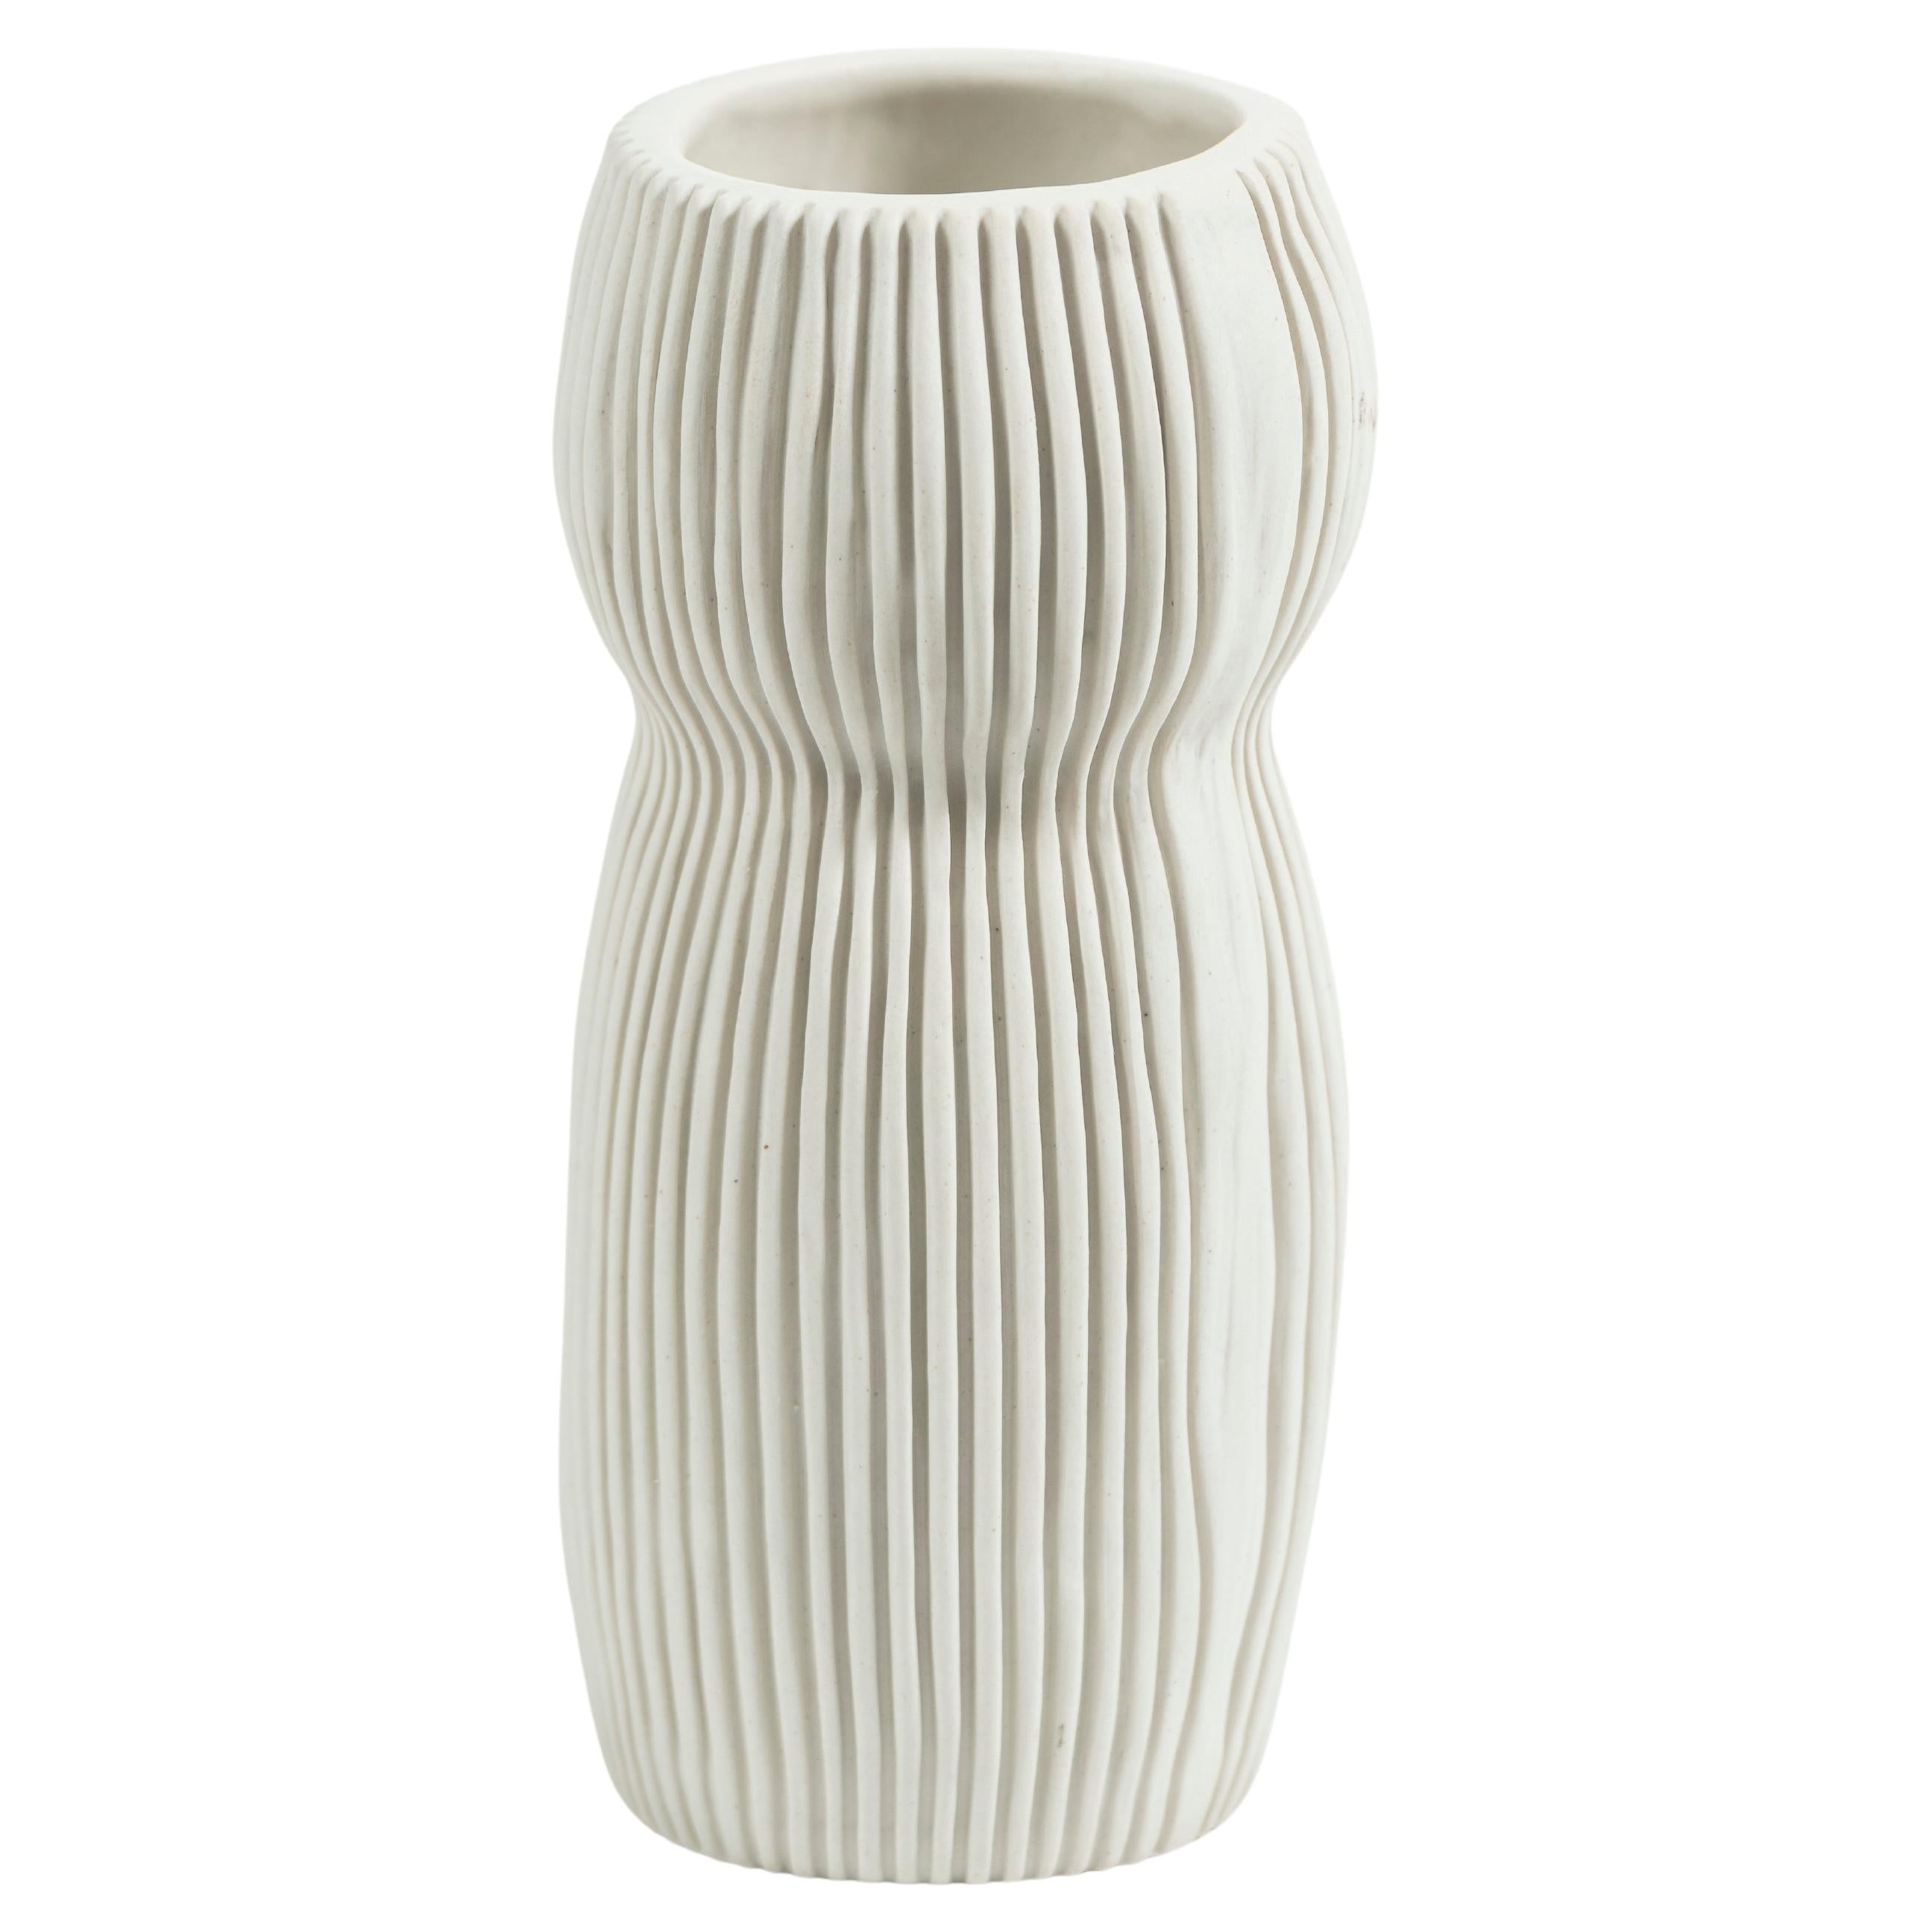 Hand Crafted Contemporary Ceramic Vase in Cream, signed